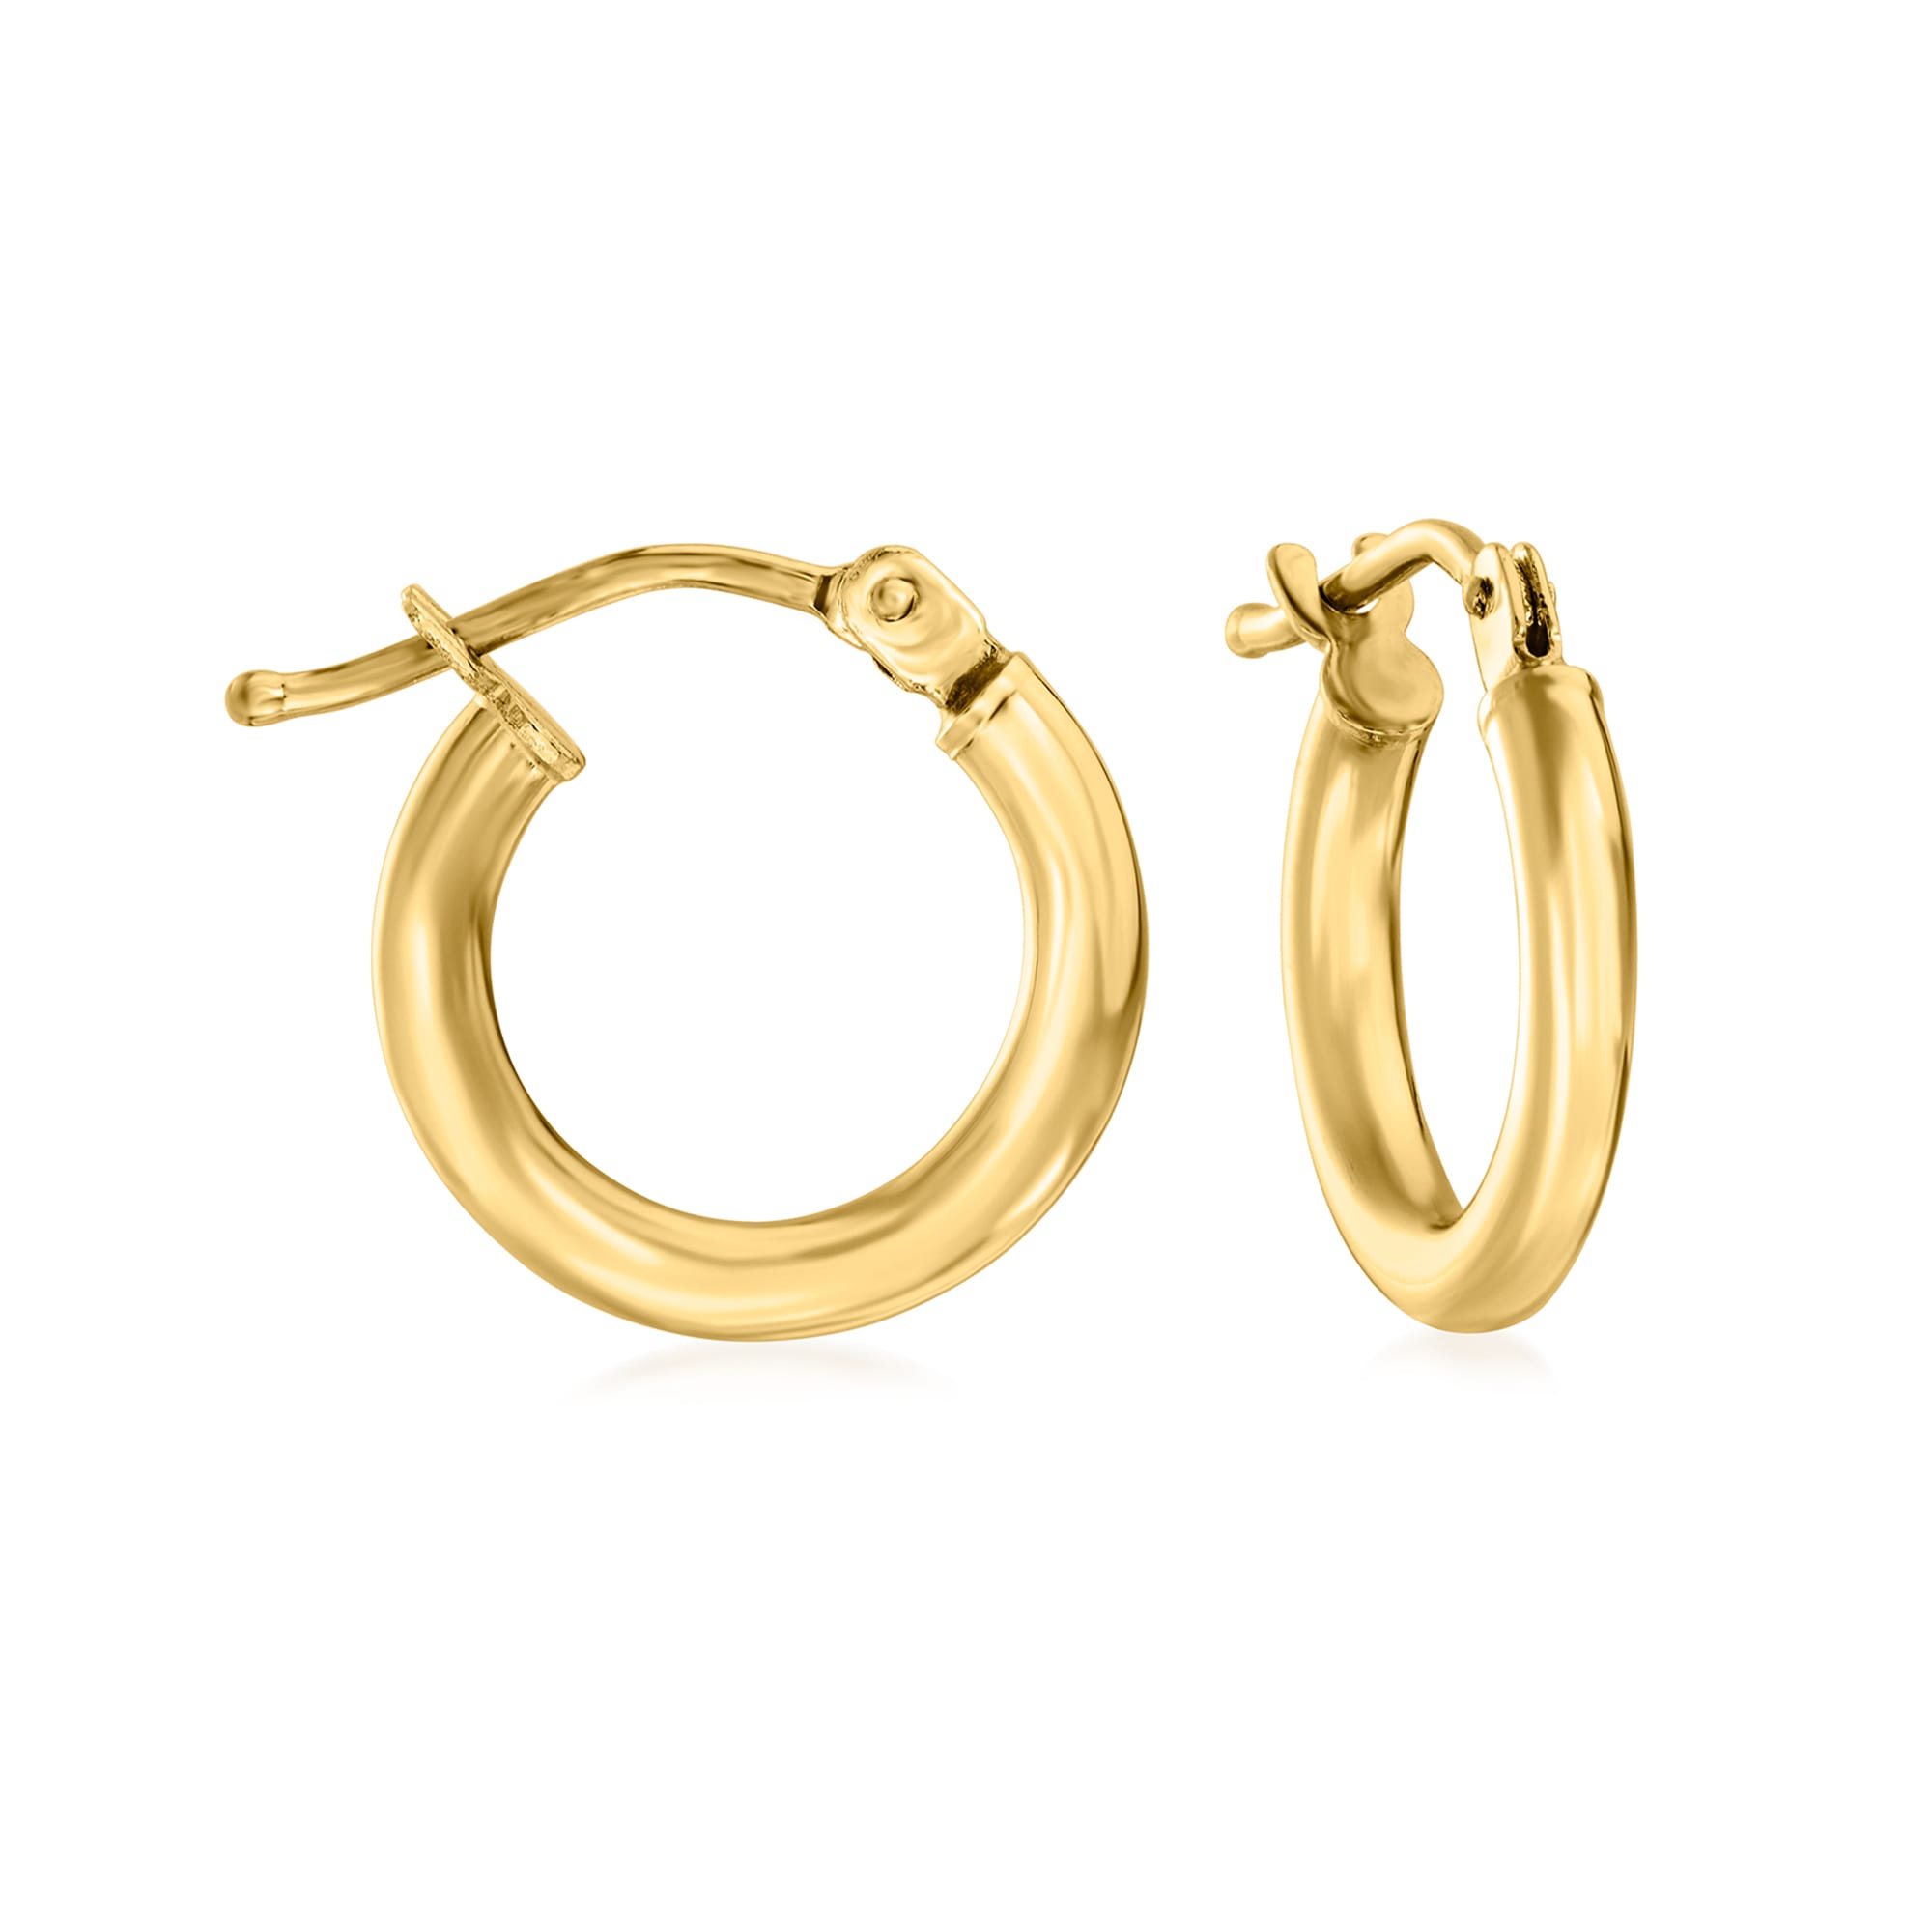 1 inch Italian Multi-Hoop Earrings 14K Gold - Apples of Gold Jewelry